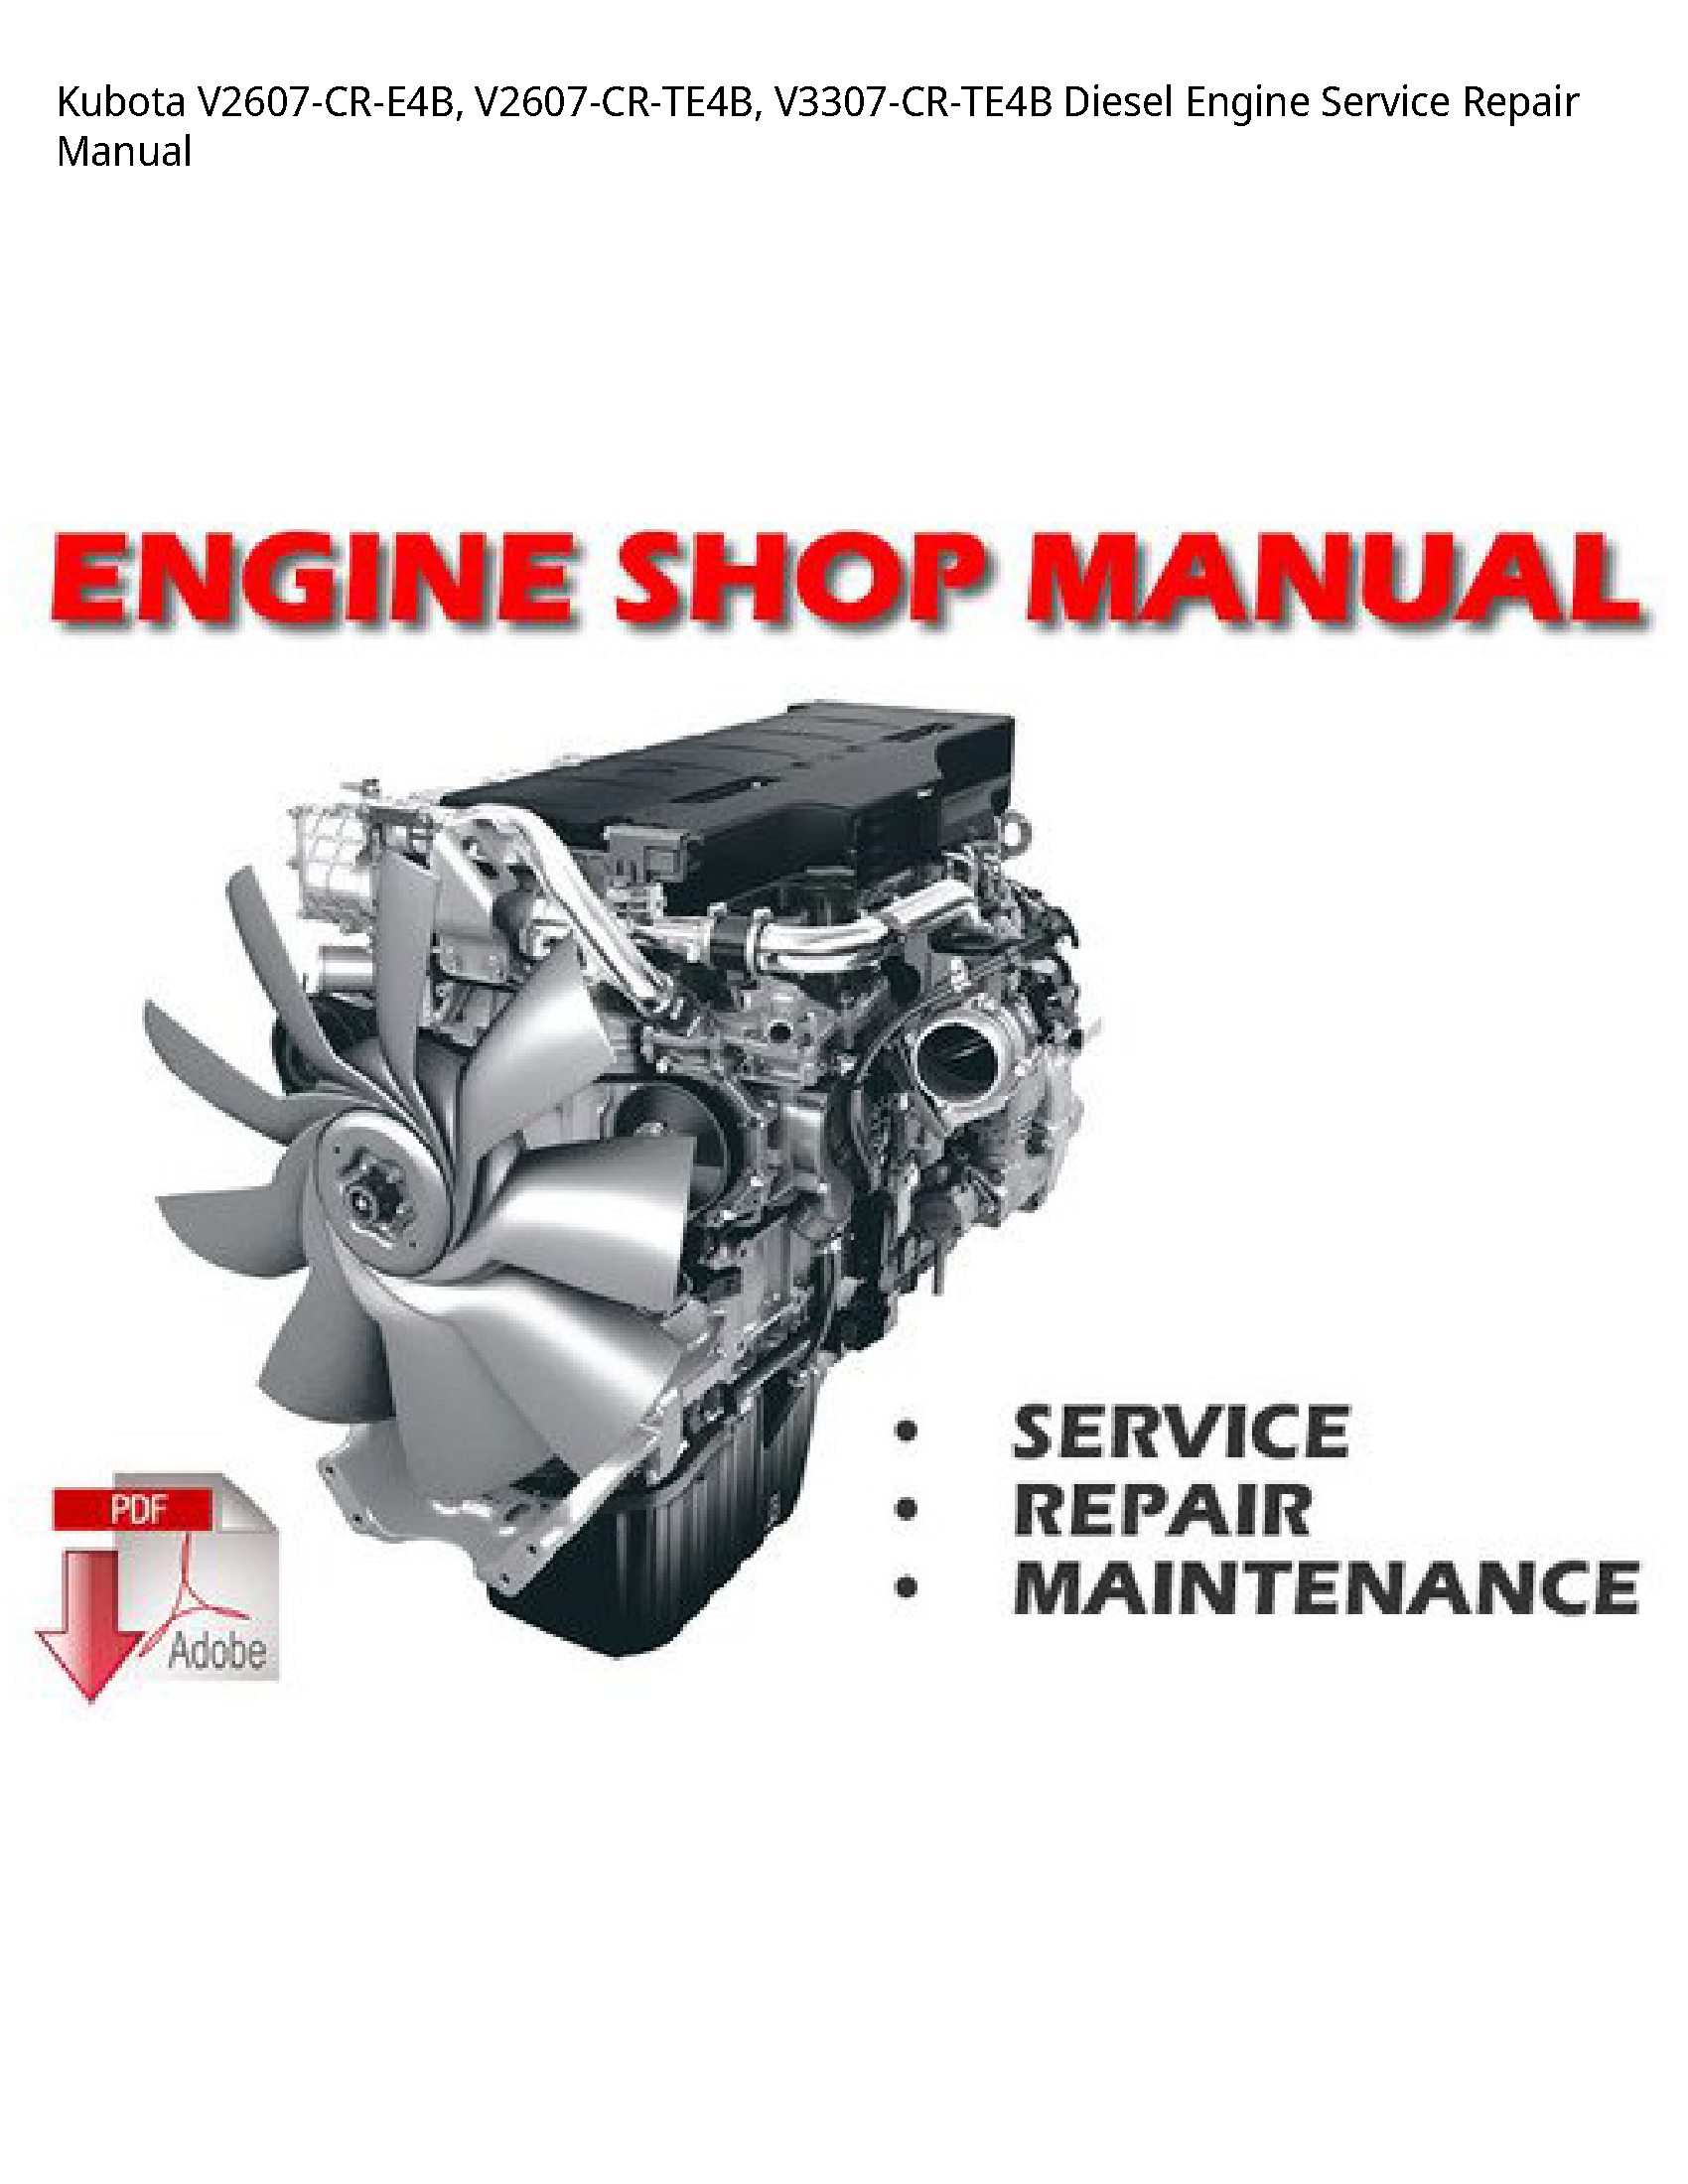 Kubota V2607-CR-E4B Diesel Engine manual